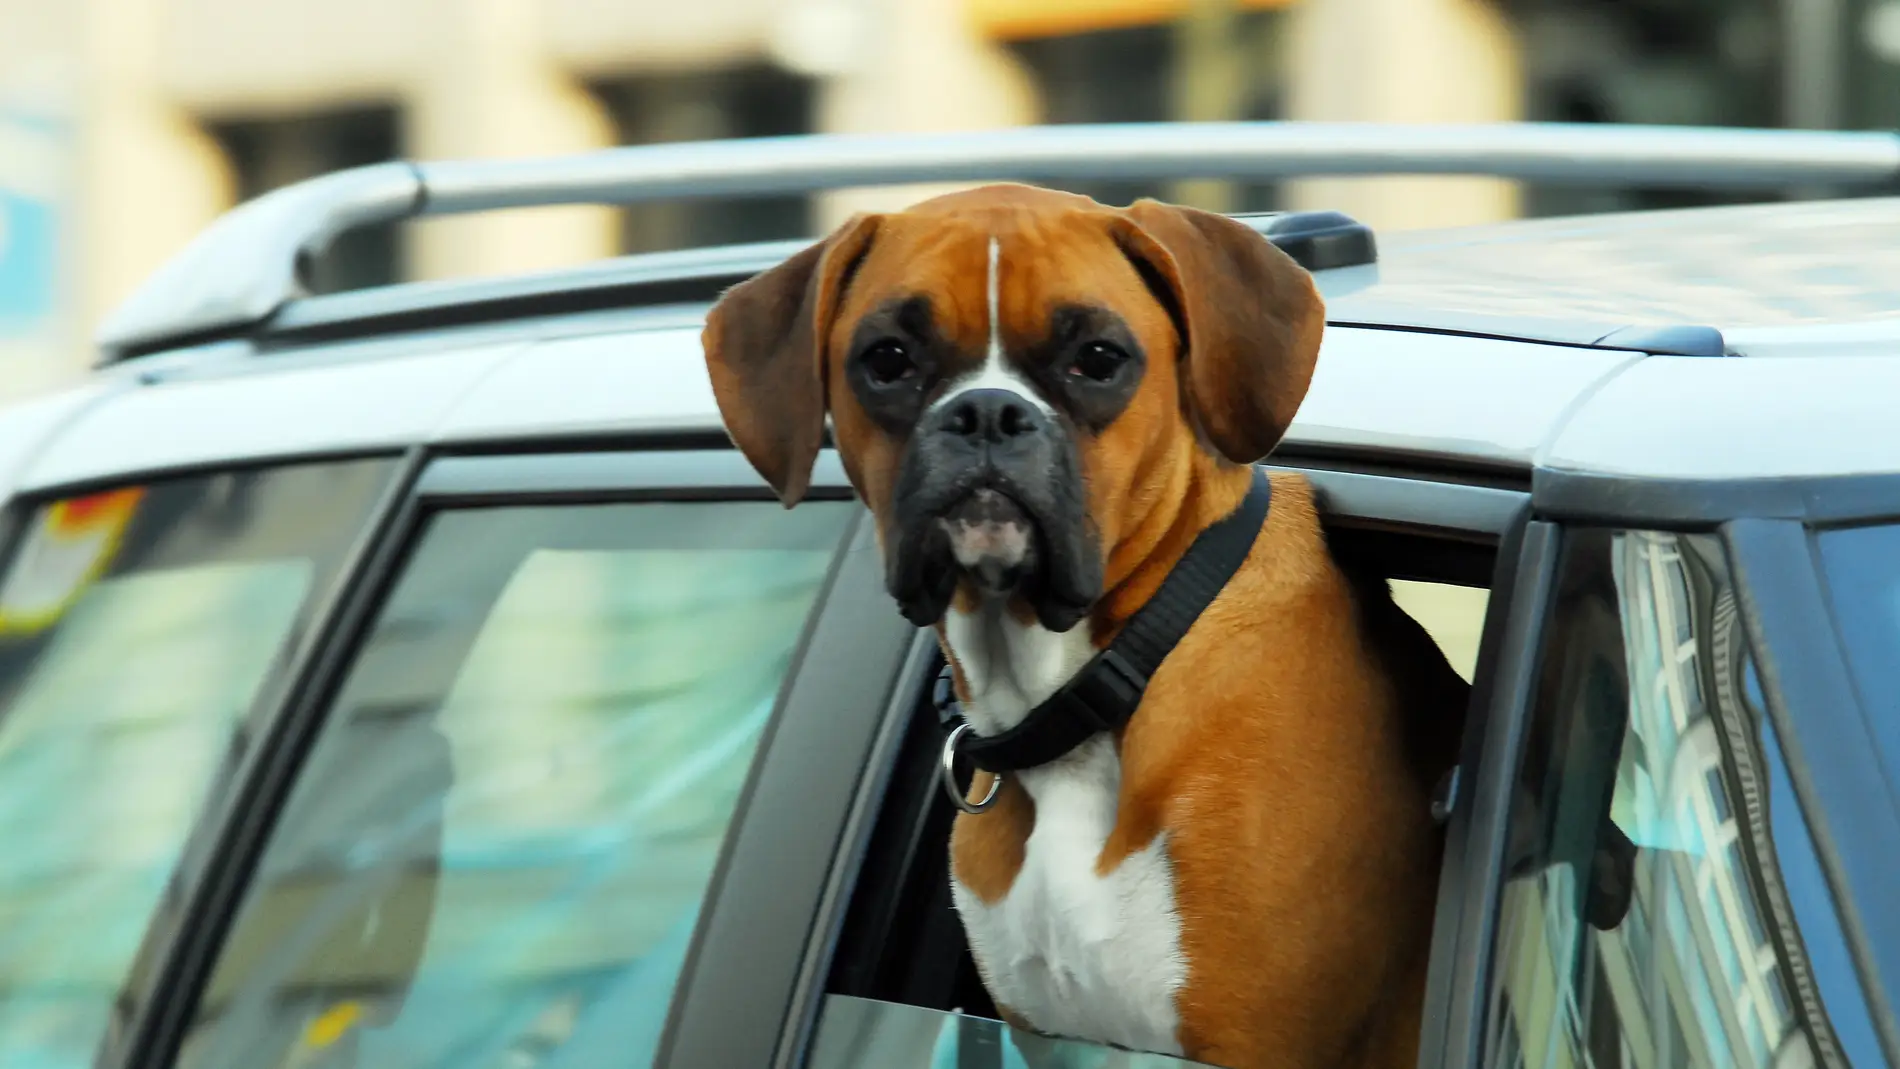 5 consejos de seguridad para viajar con perros y gatos